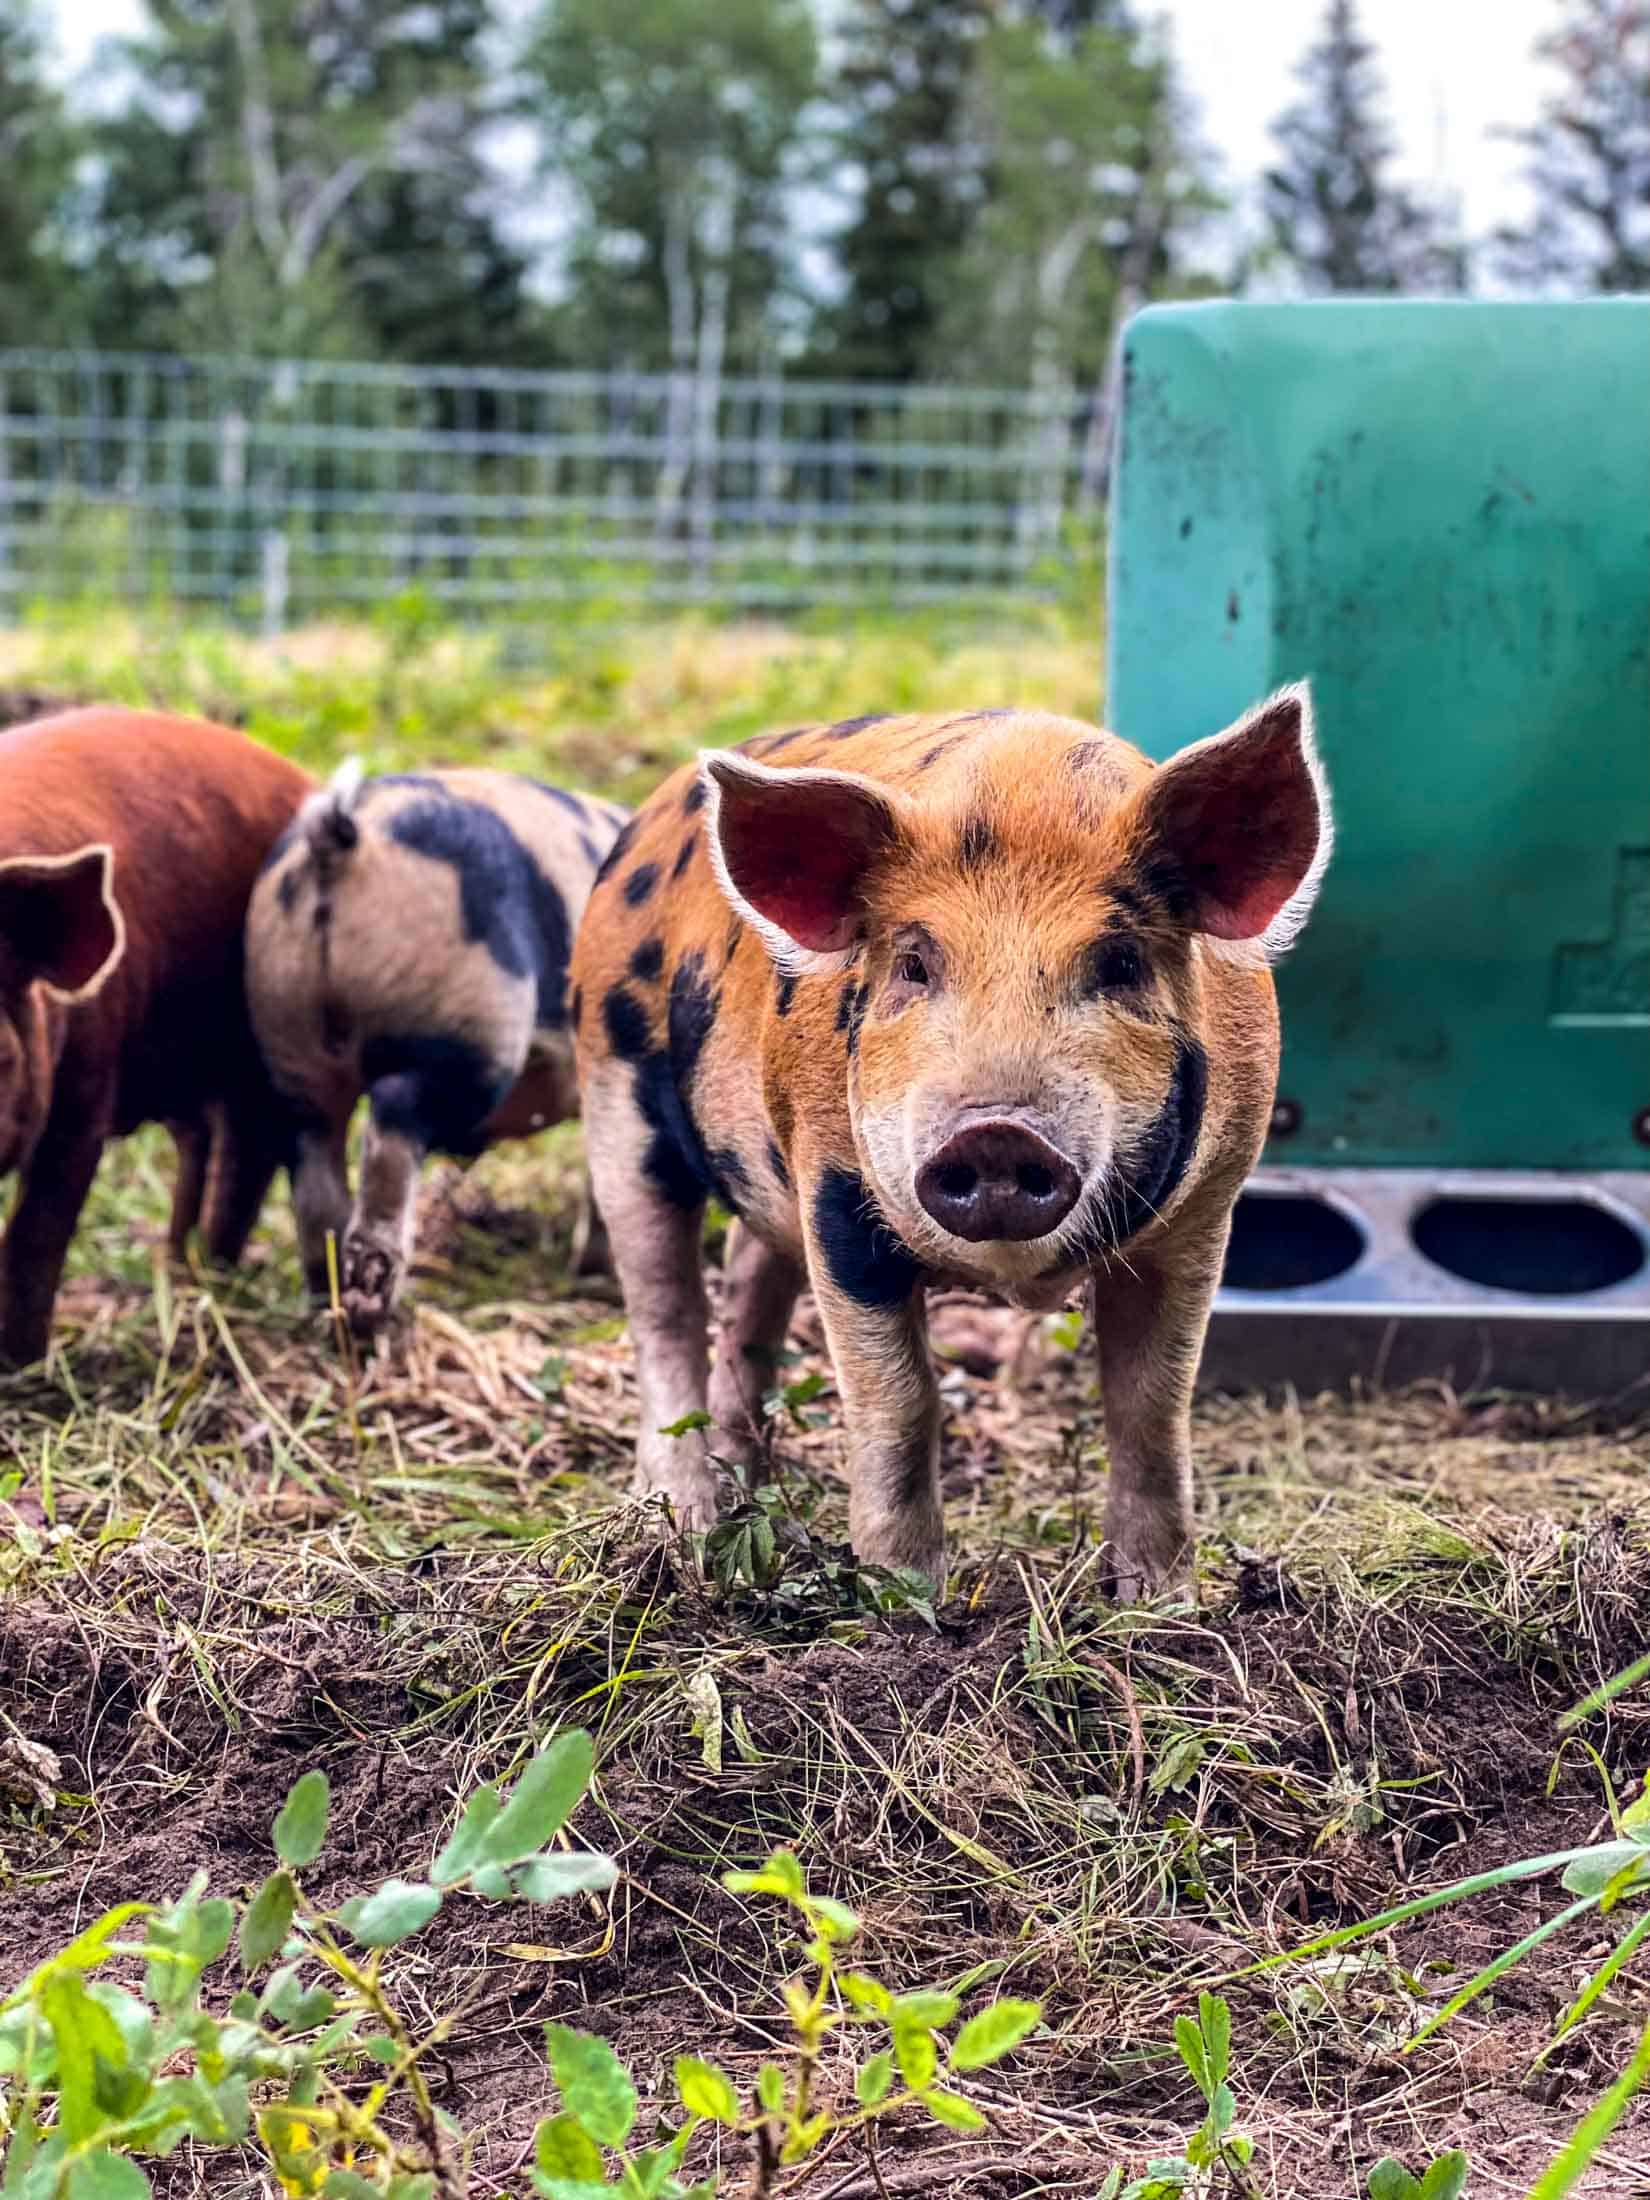 Duroc-kunekune mix breed pig in a pasture enclosure.